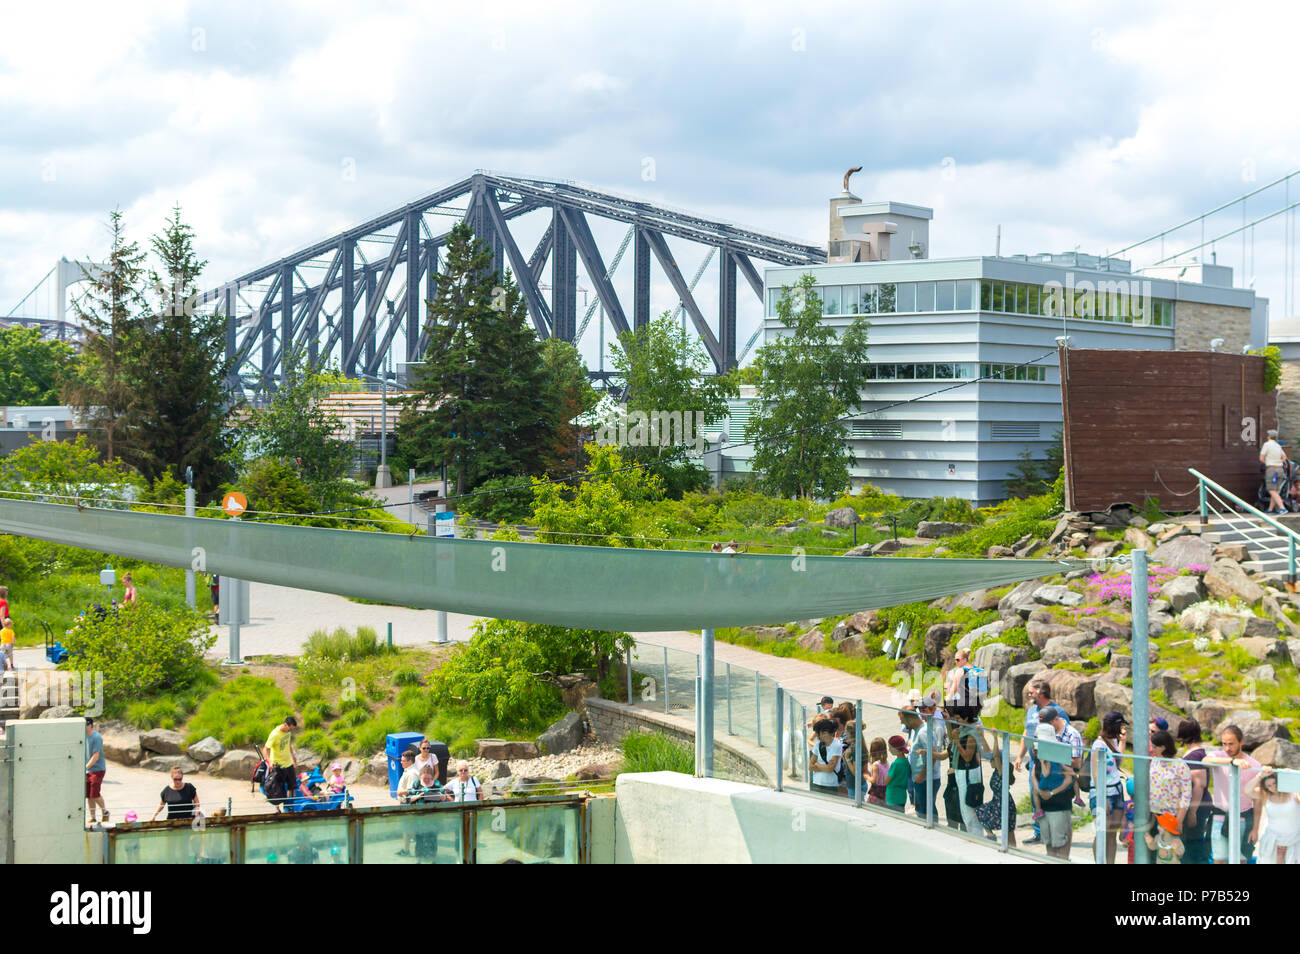 Montreal, Canada - June 23, 2018: Quebec city bridge and the aquarium park in Quebec city, Canada Stock Photo